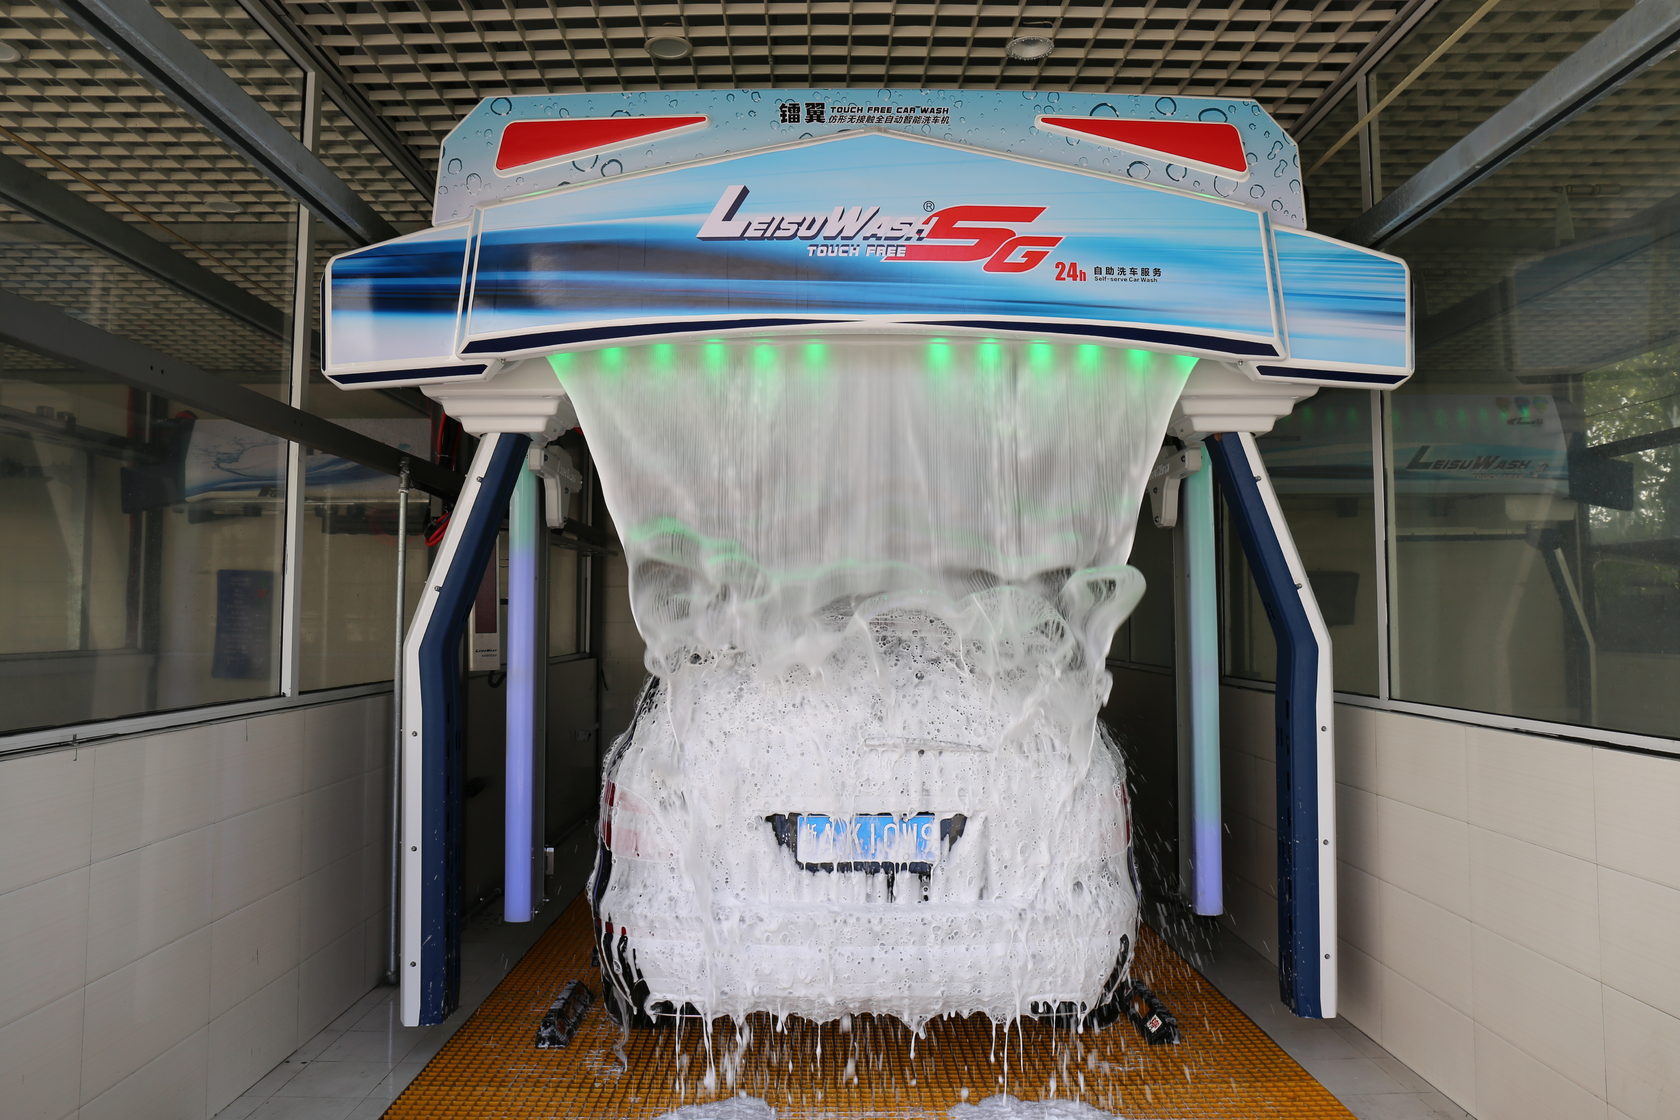 Мойка бесконтактная роботизированная. Leisuwash 360 Automatic Touchless car Wash Equipment. Автомойка leisu Wash. Мойка Leisuwash 360. Робот мойка Leisuwash.